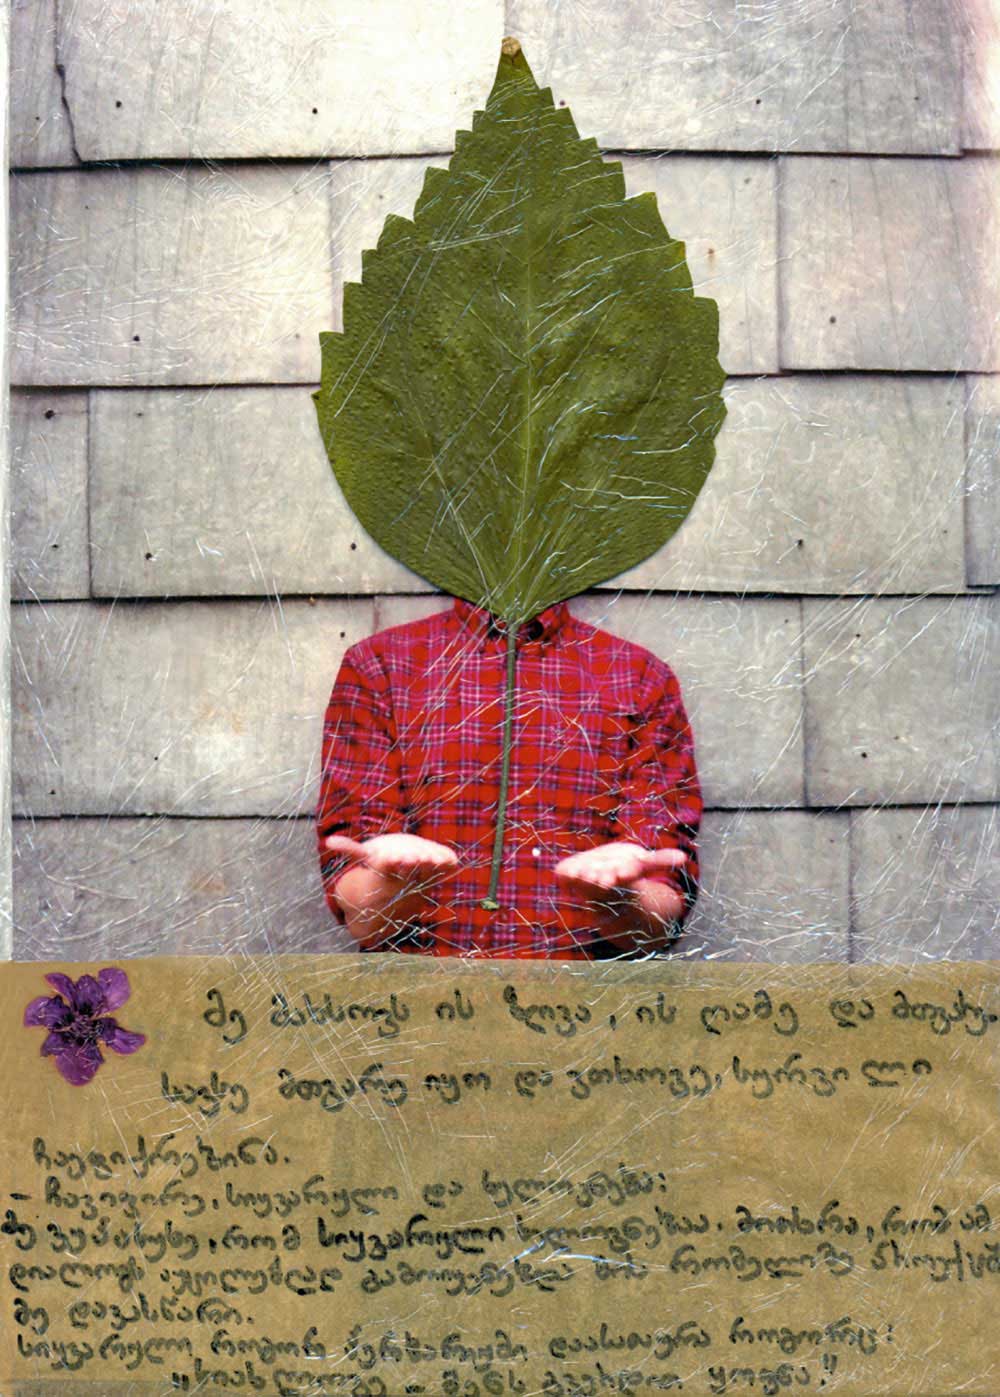 My Love as Herbarium | Nino-Ana Samkharadze